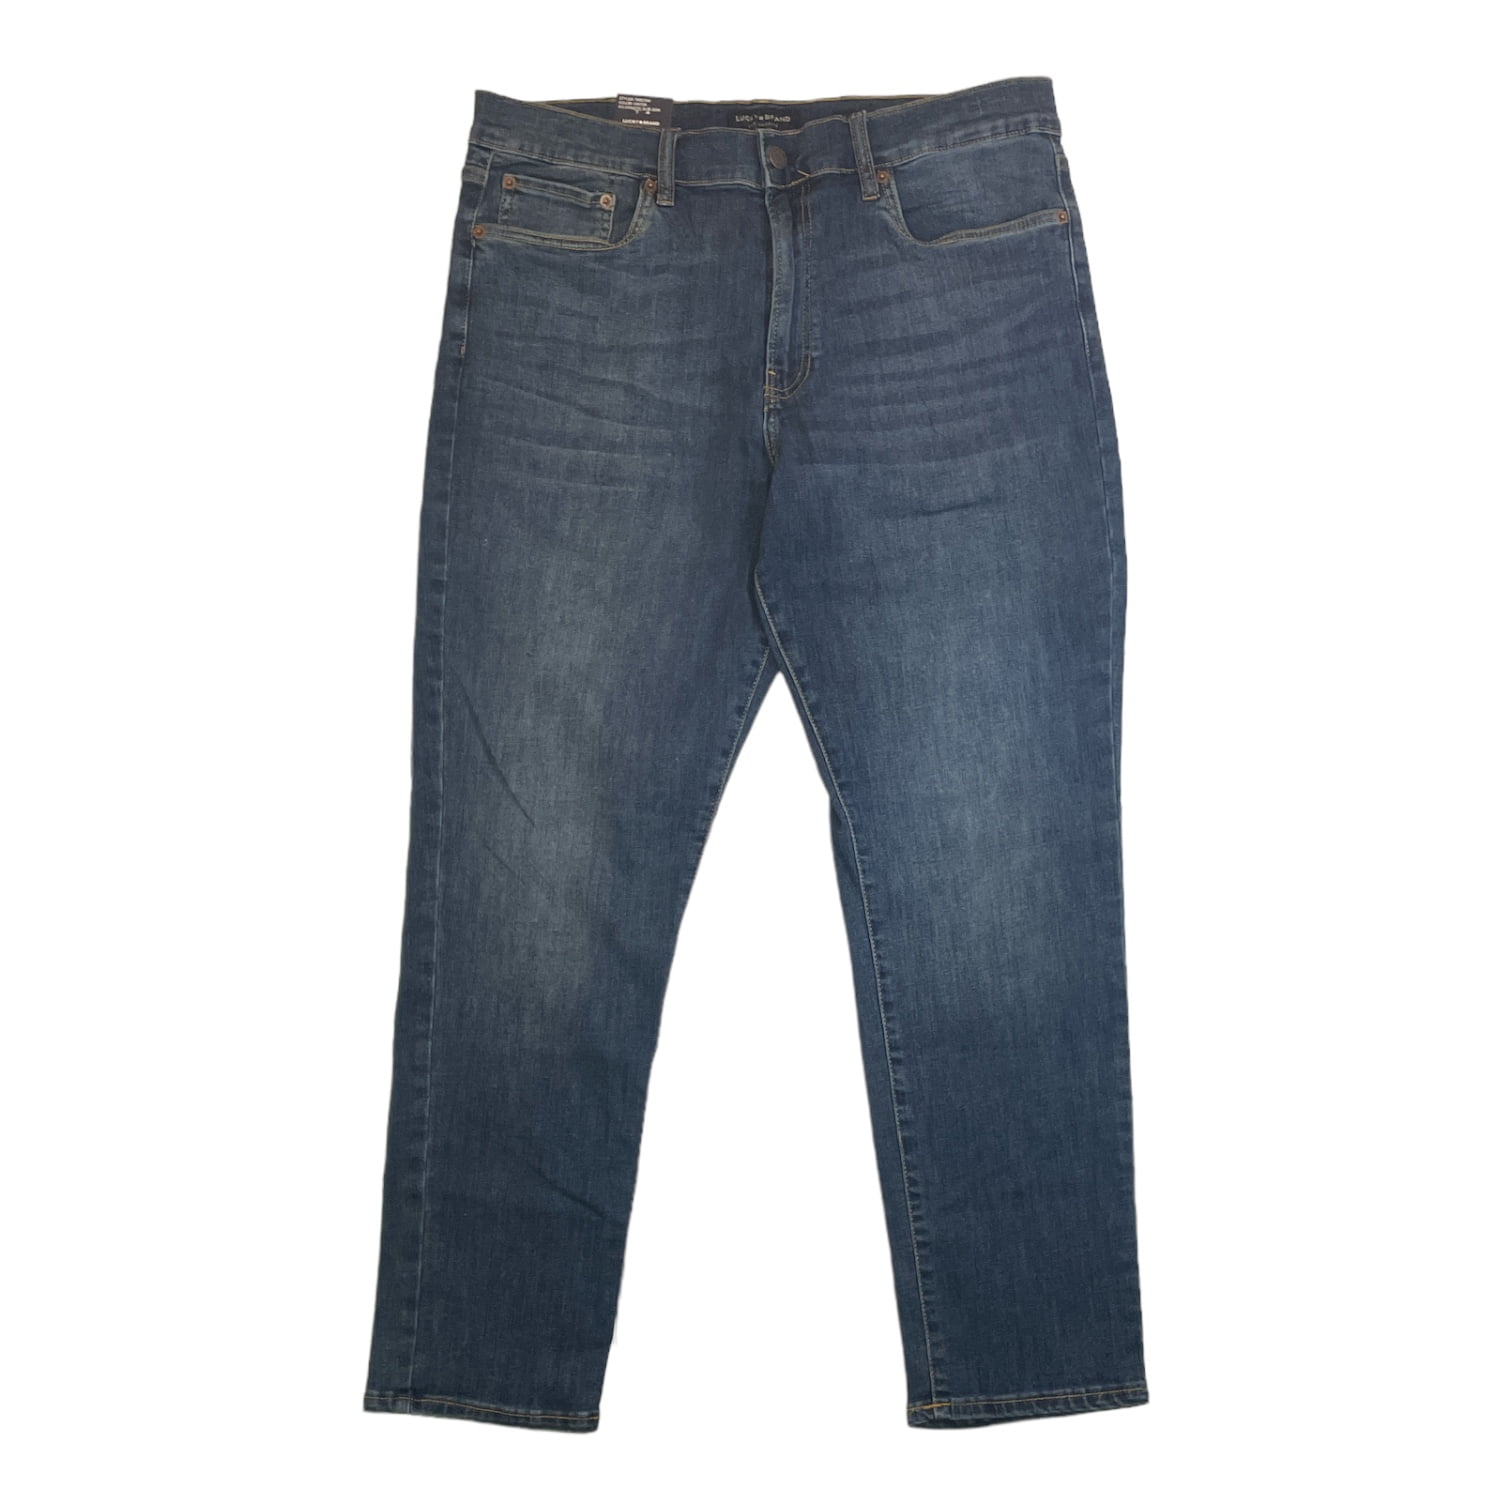 Lucky Brand 12 / 31 Women's 100% Cotton USA Made Denim Blue Jeans